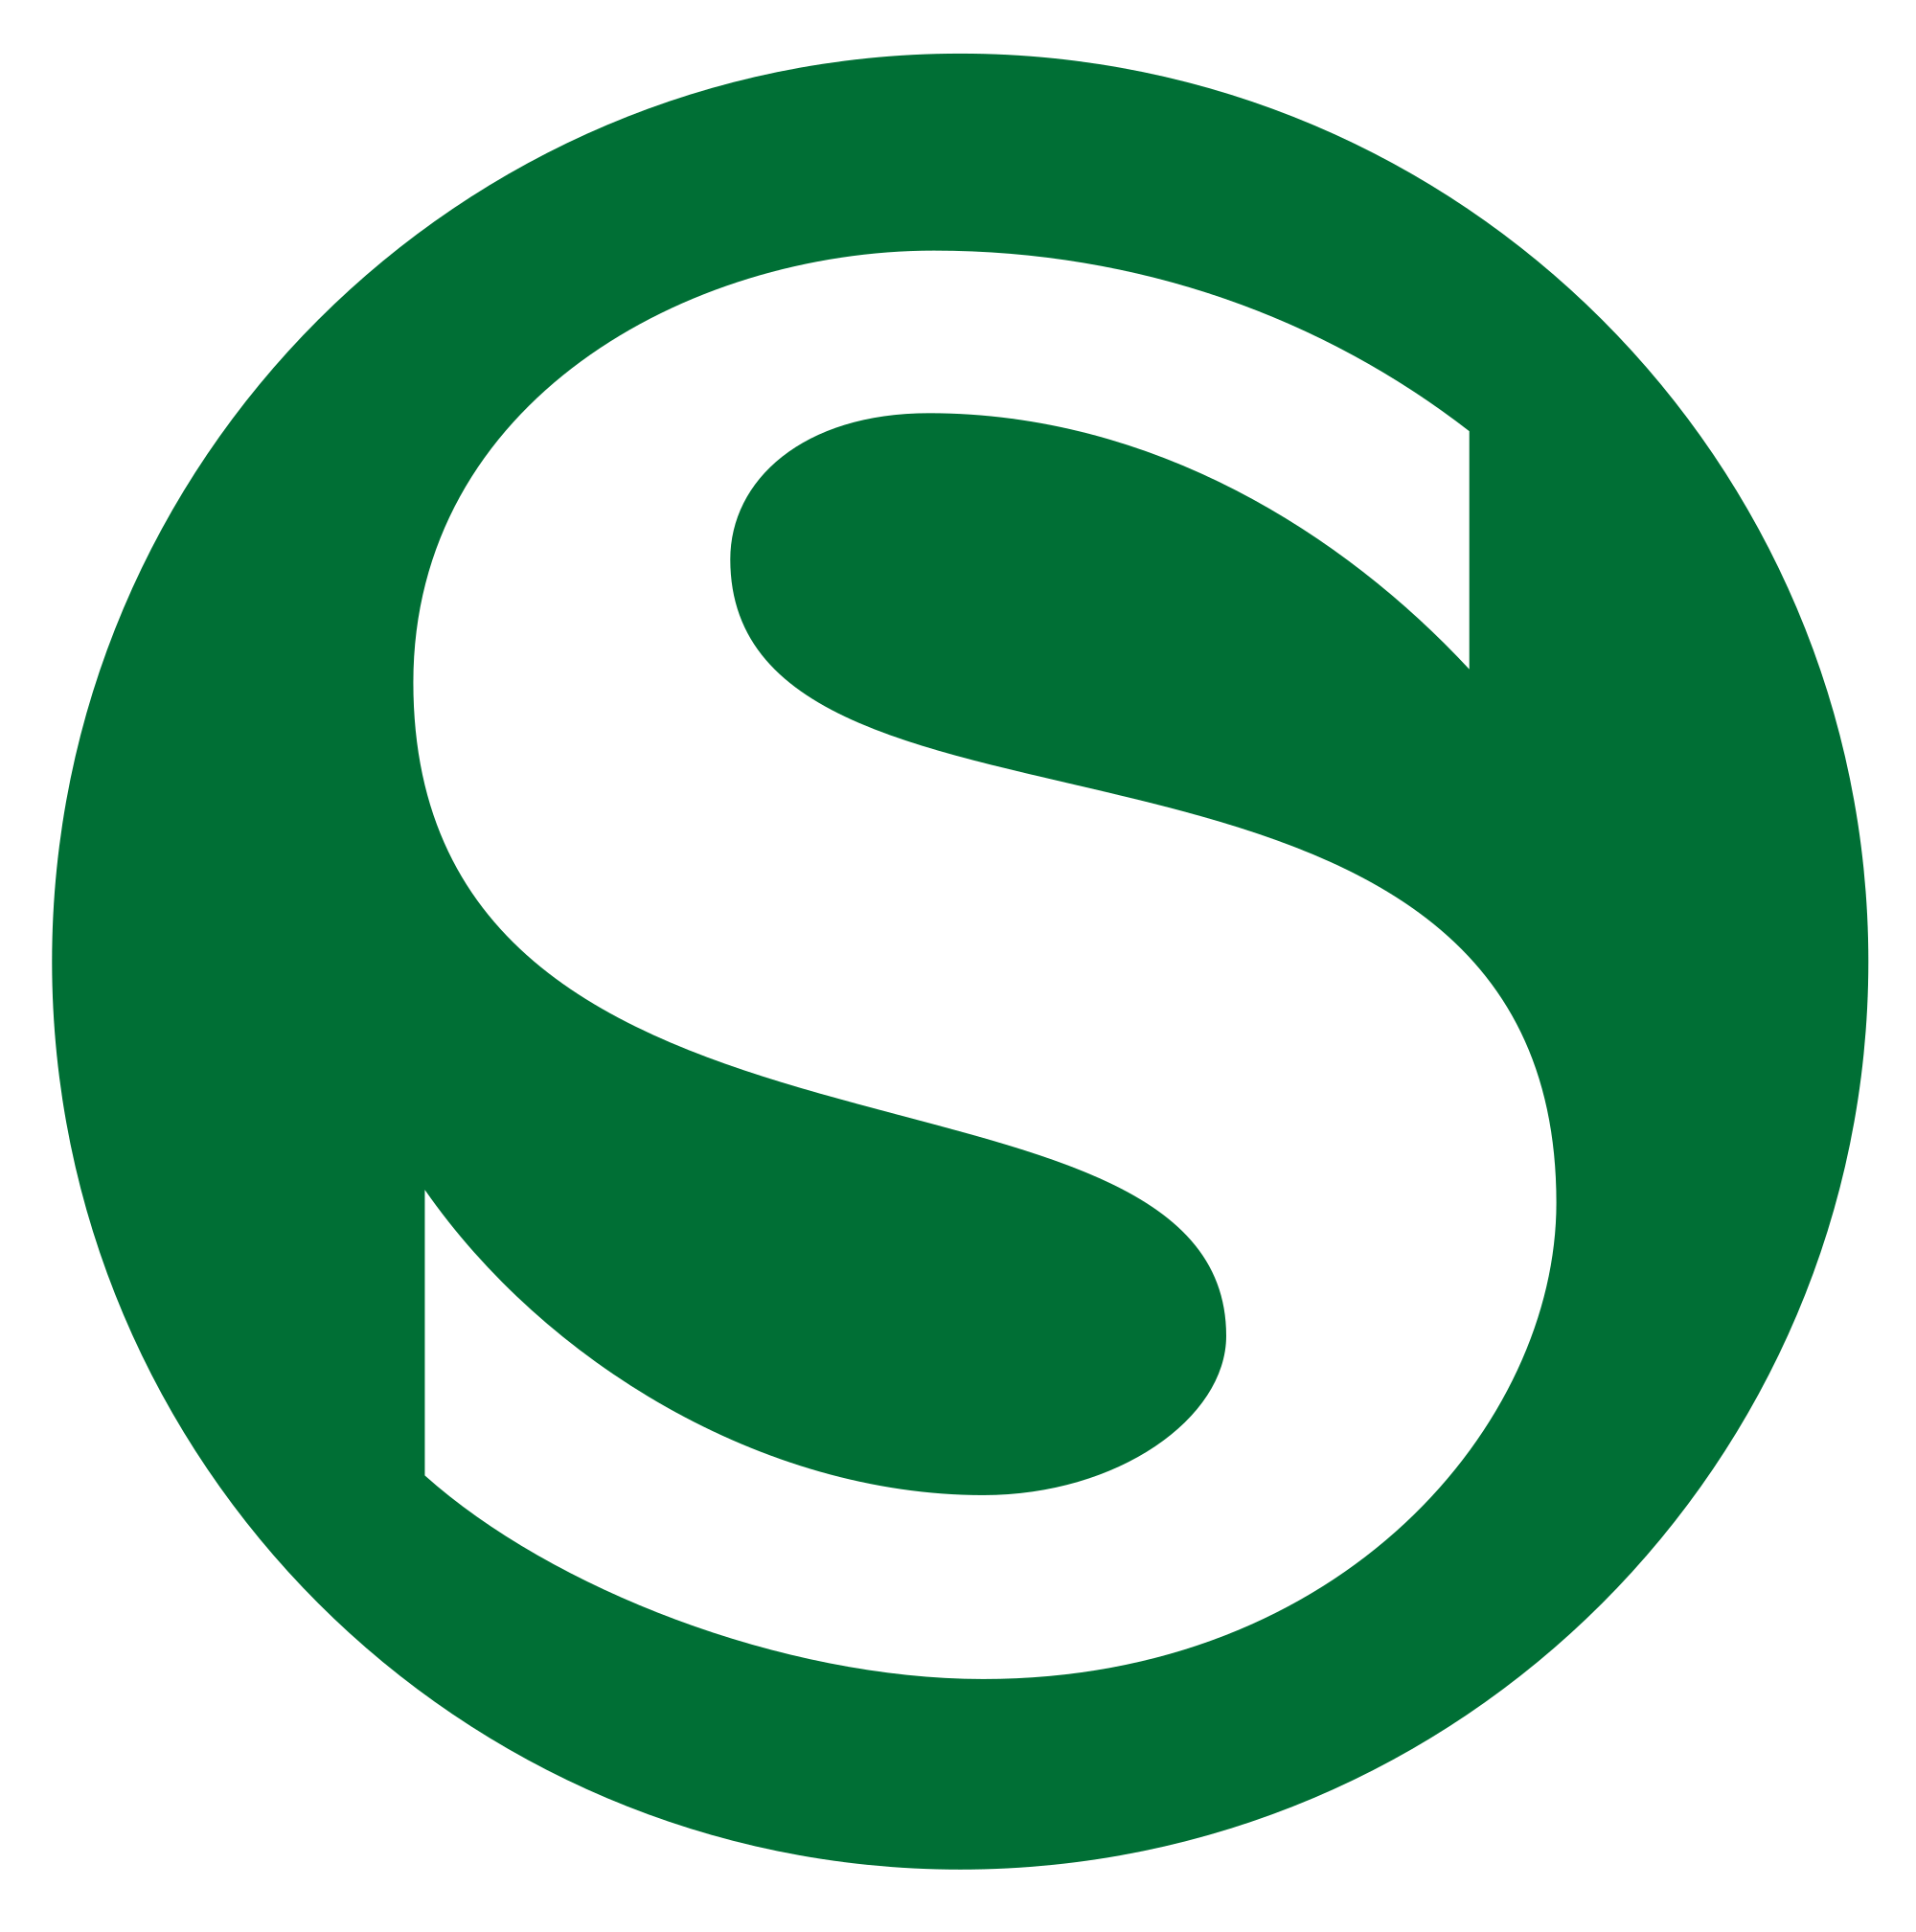 S Green Logo - File:S-Bahn-Logo.svg - Wikimedia Commons